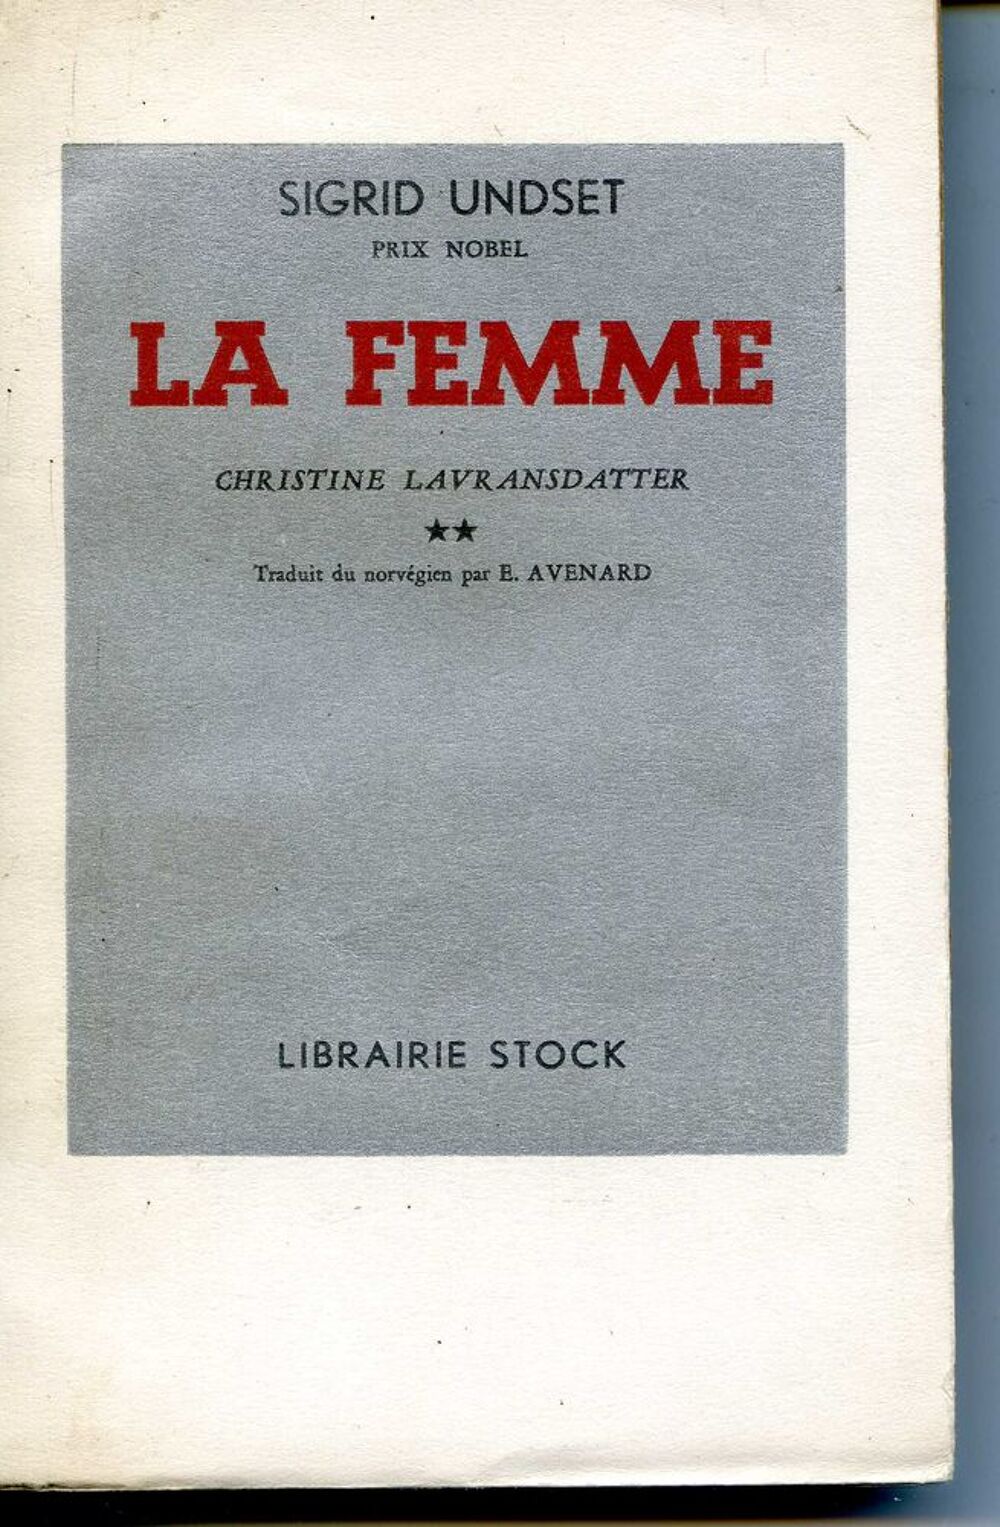  Christine Lavransdatter - 2 La femme - Sigrid Undset, Livres et BD